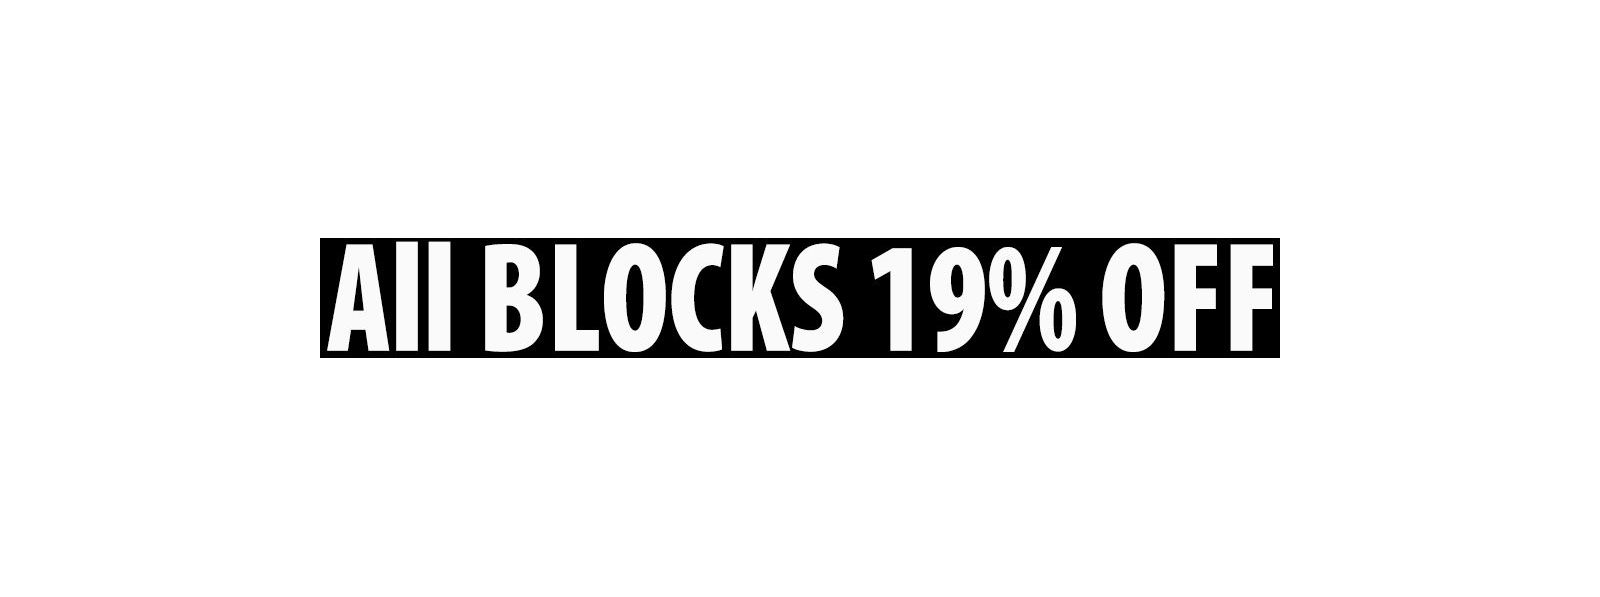 All Blocks 19% OFF